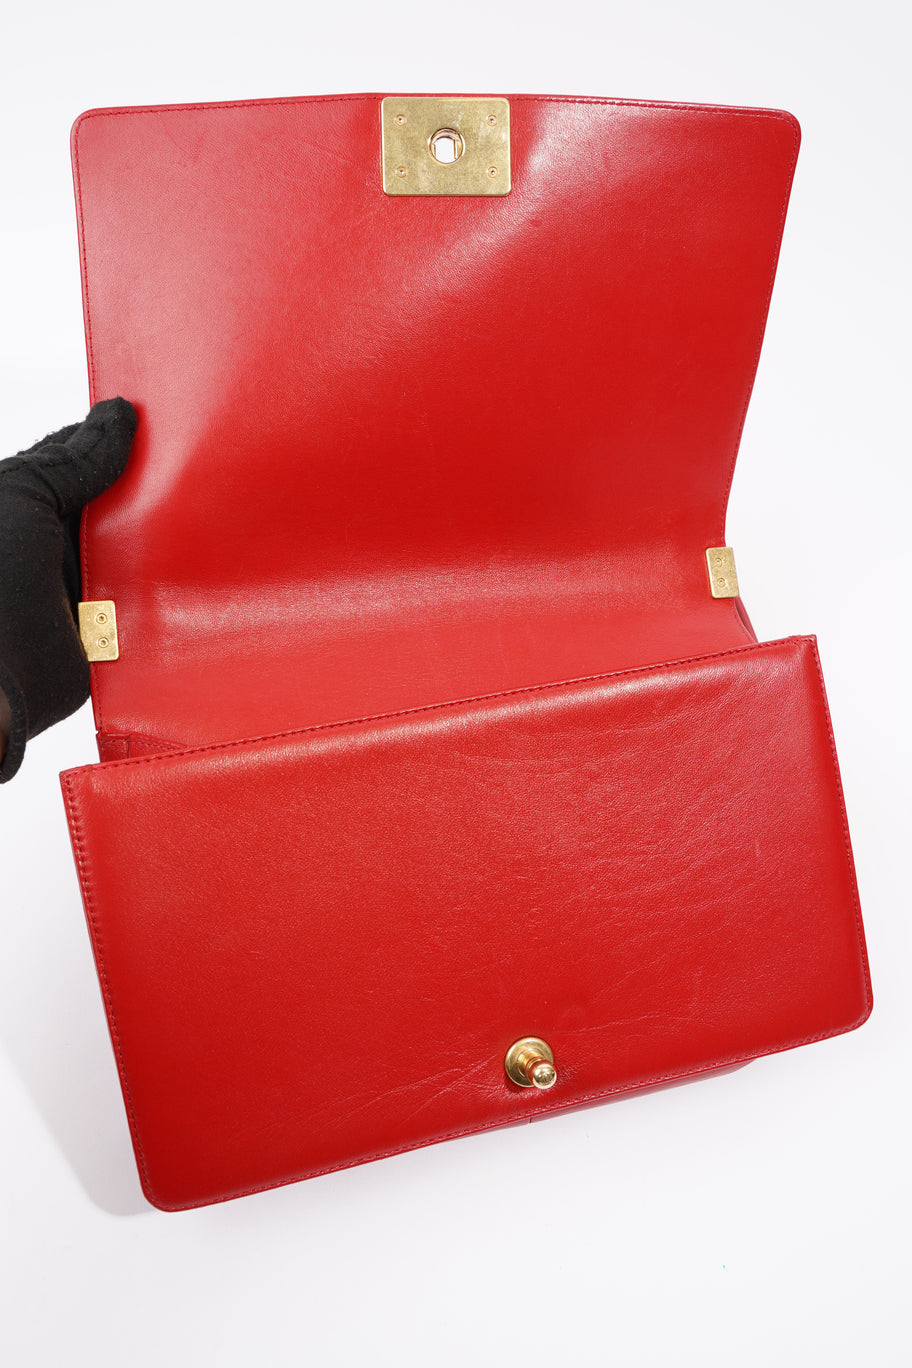 Boy Bag Red Calfskin Leather Large Image 9